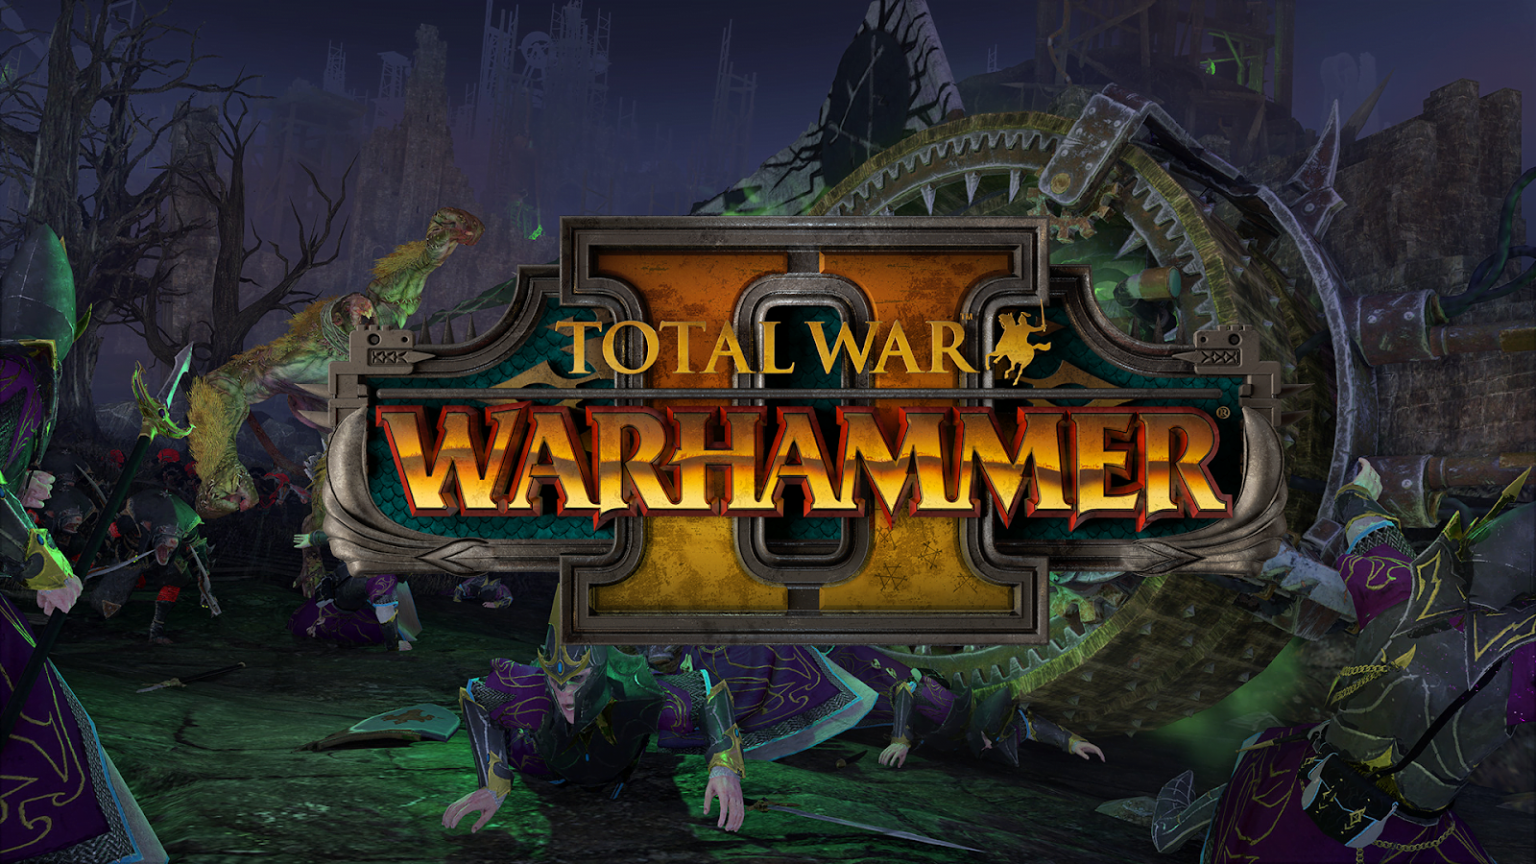 Total War Warhammer 2 PC Version Game Free Download